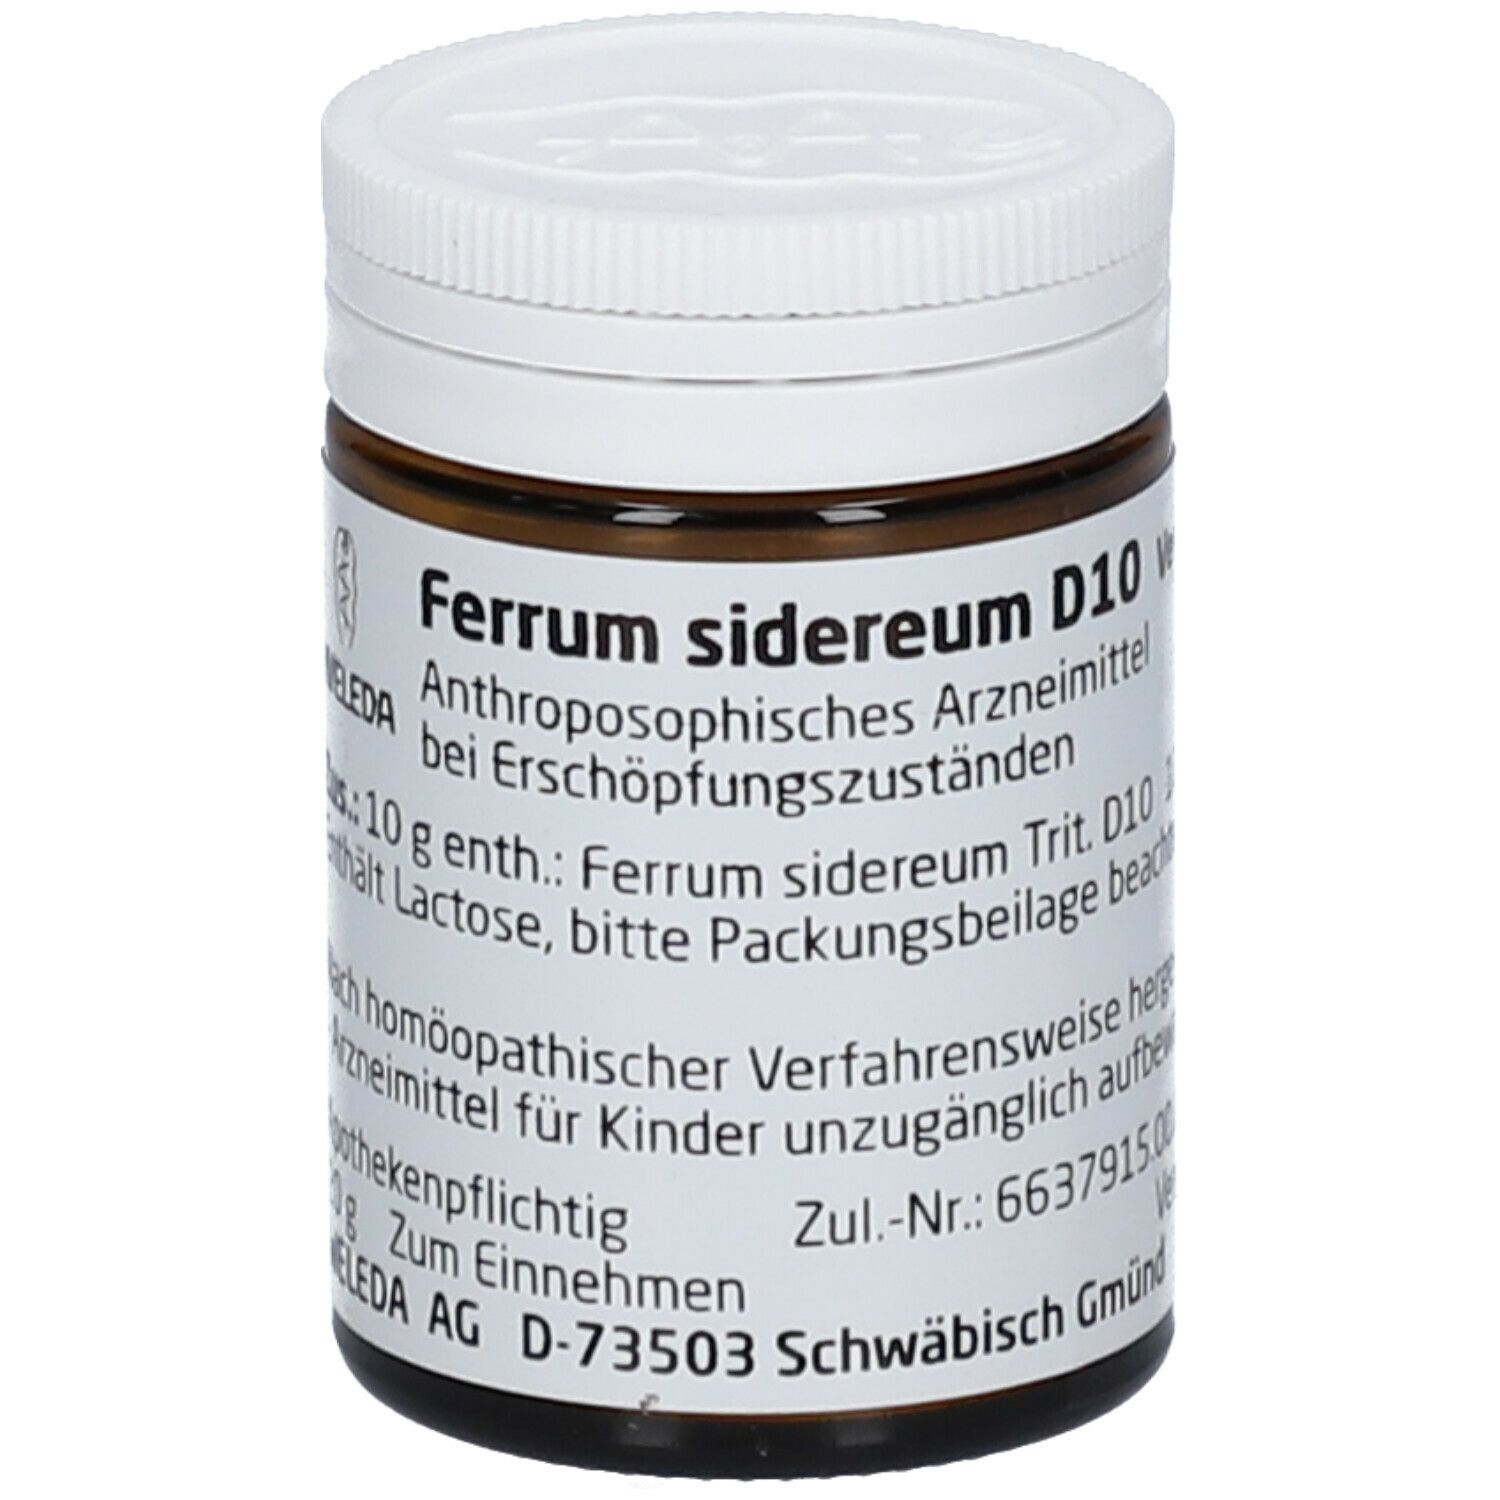 Ferrum Sidereum D 10